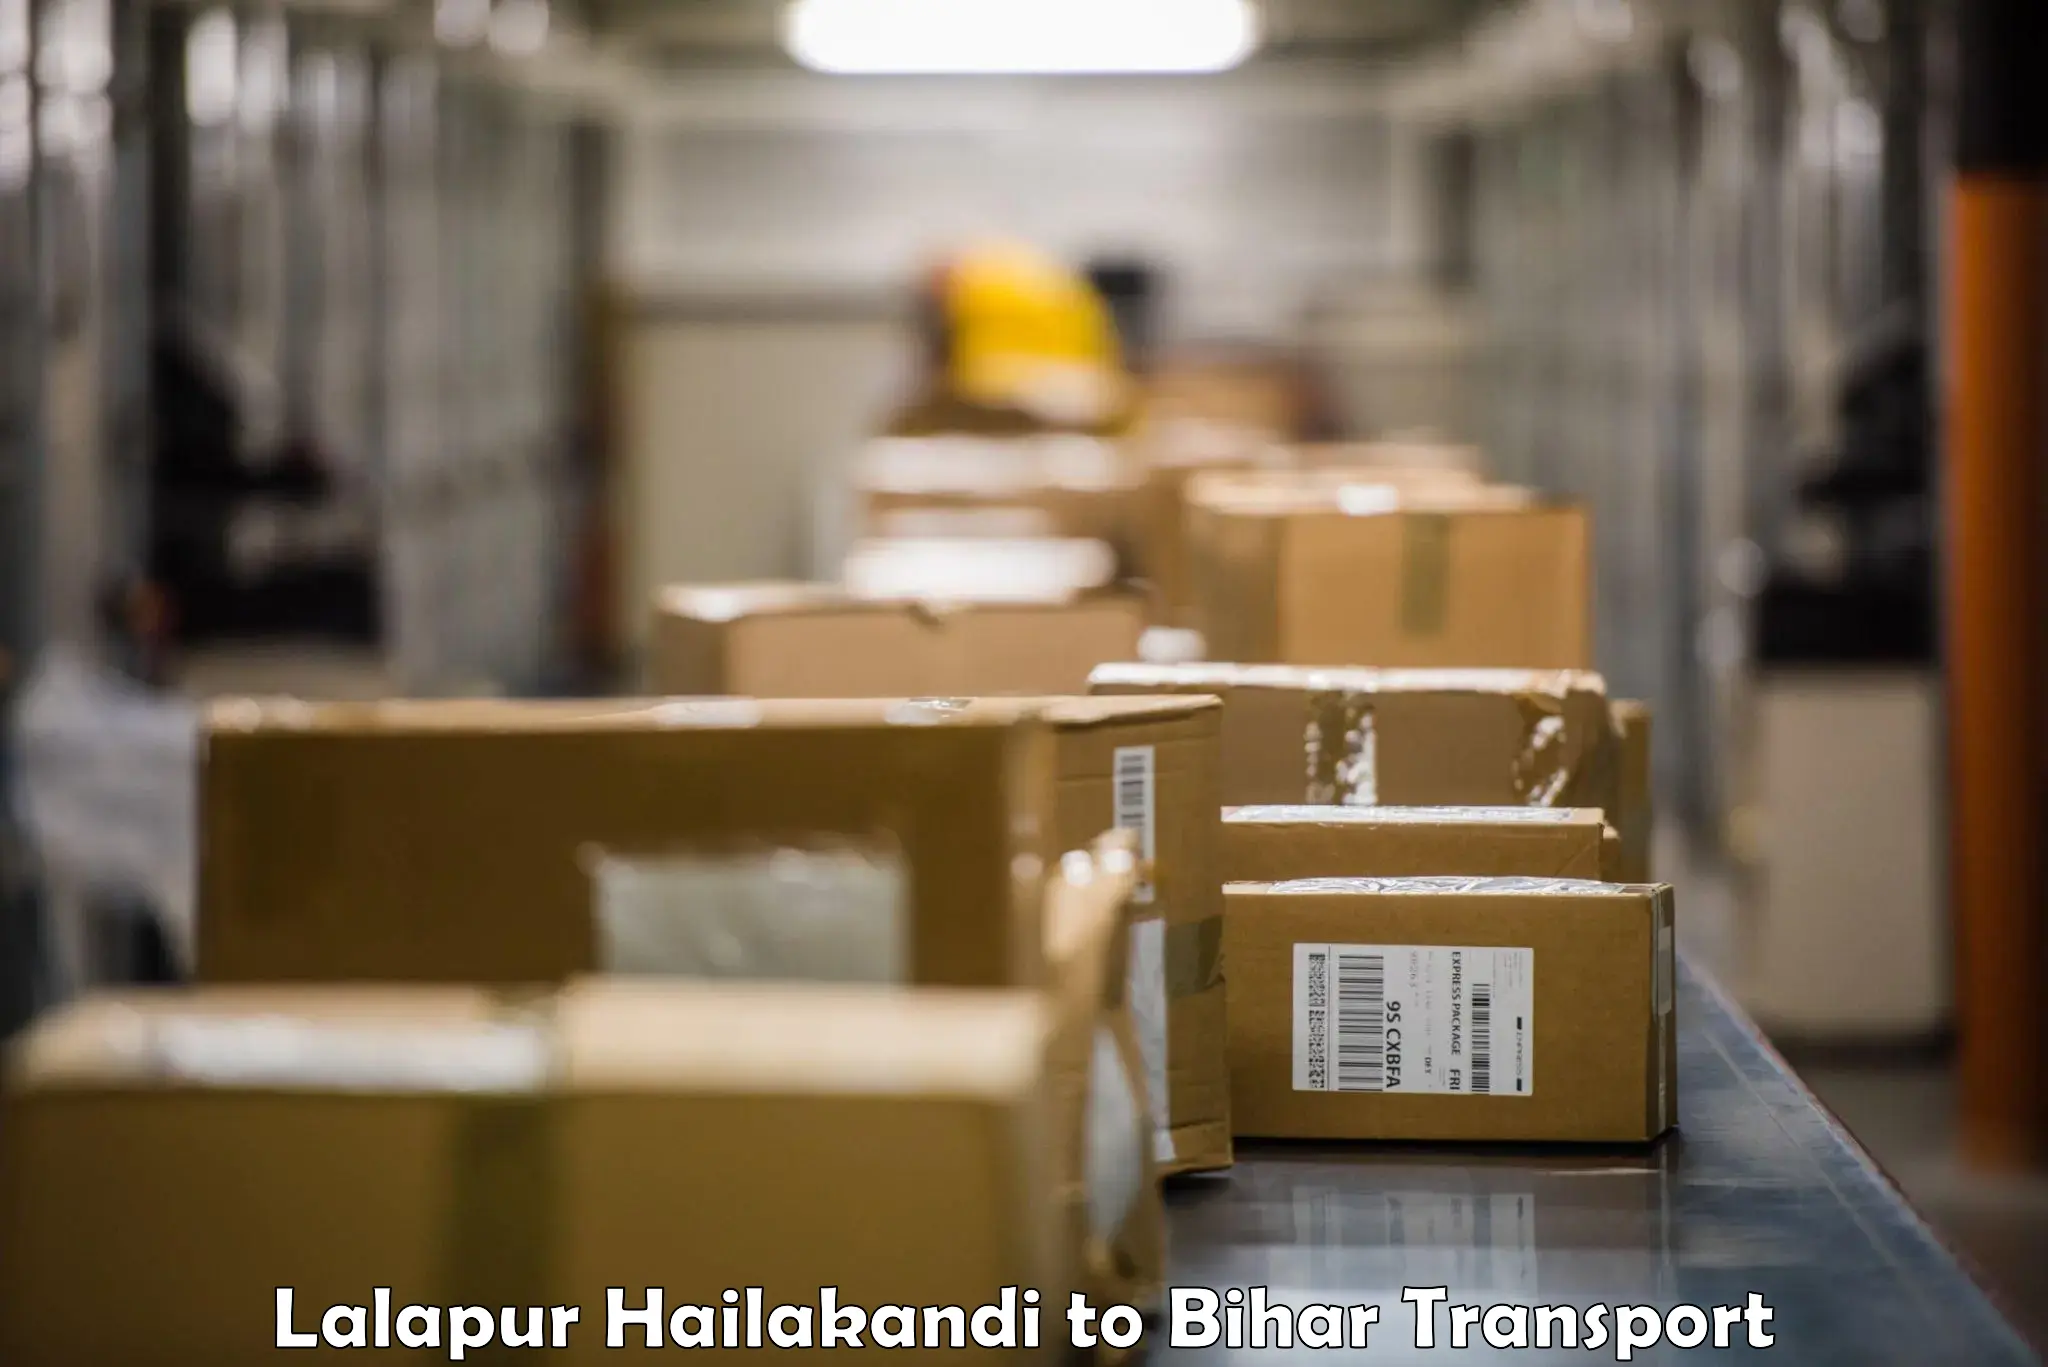 All India transport service Lalapur Hailakandi to Sahebpur Kamal